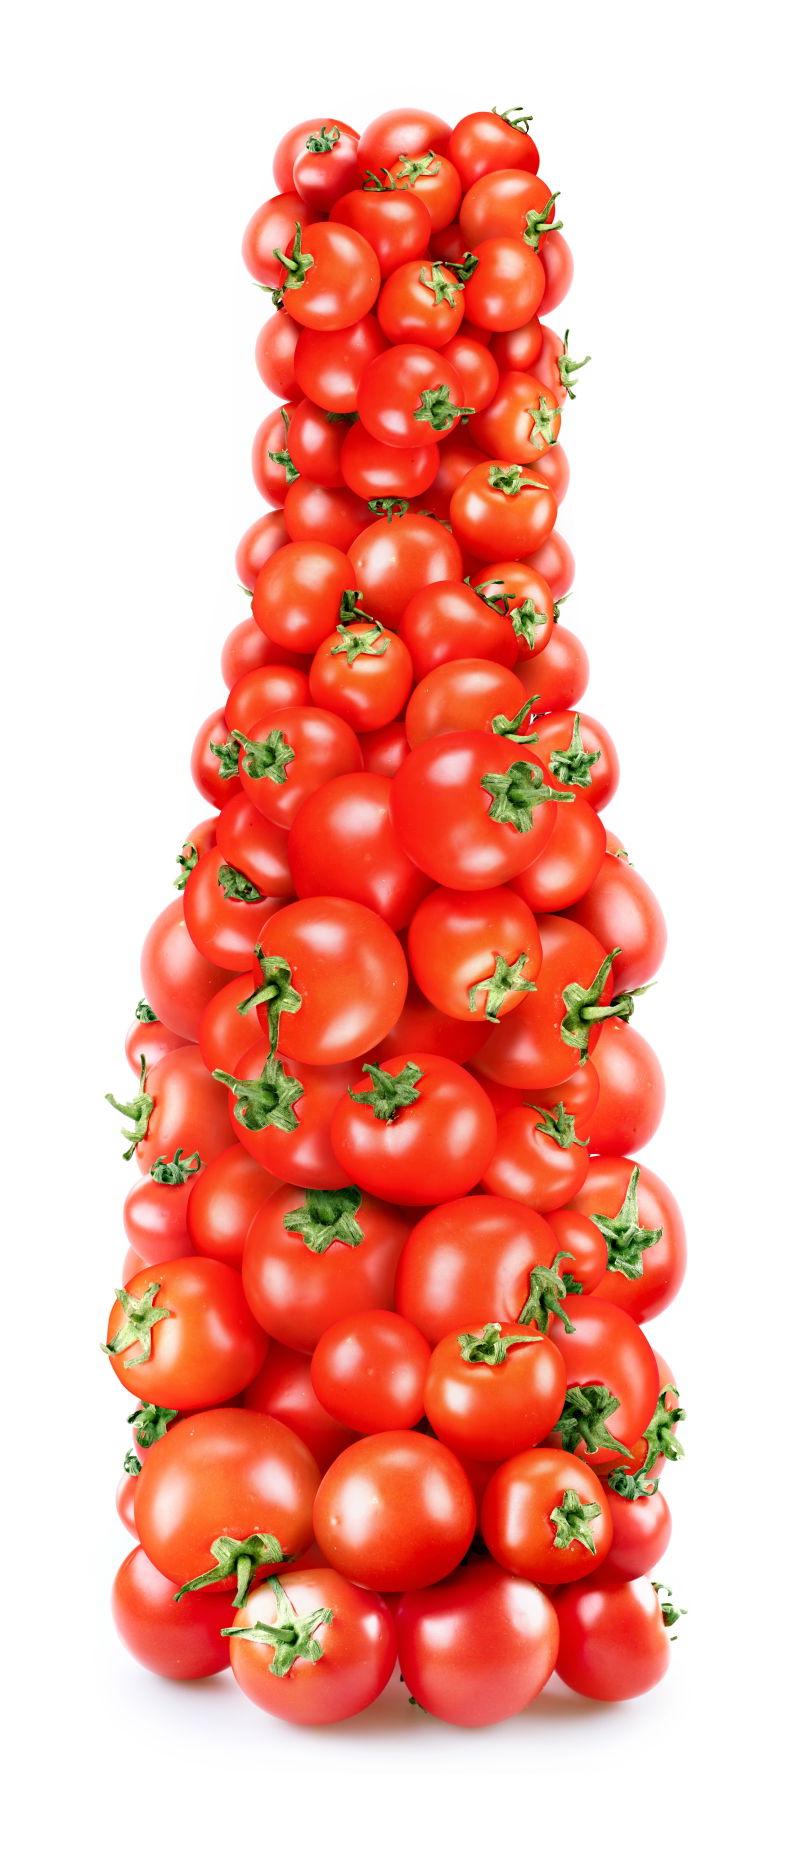 堆成塔状的西红柿